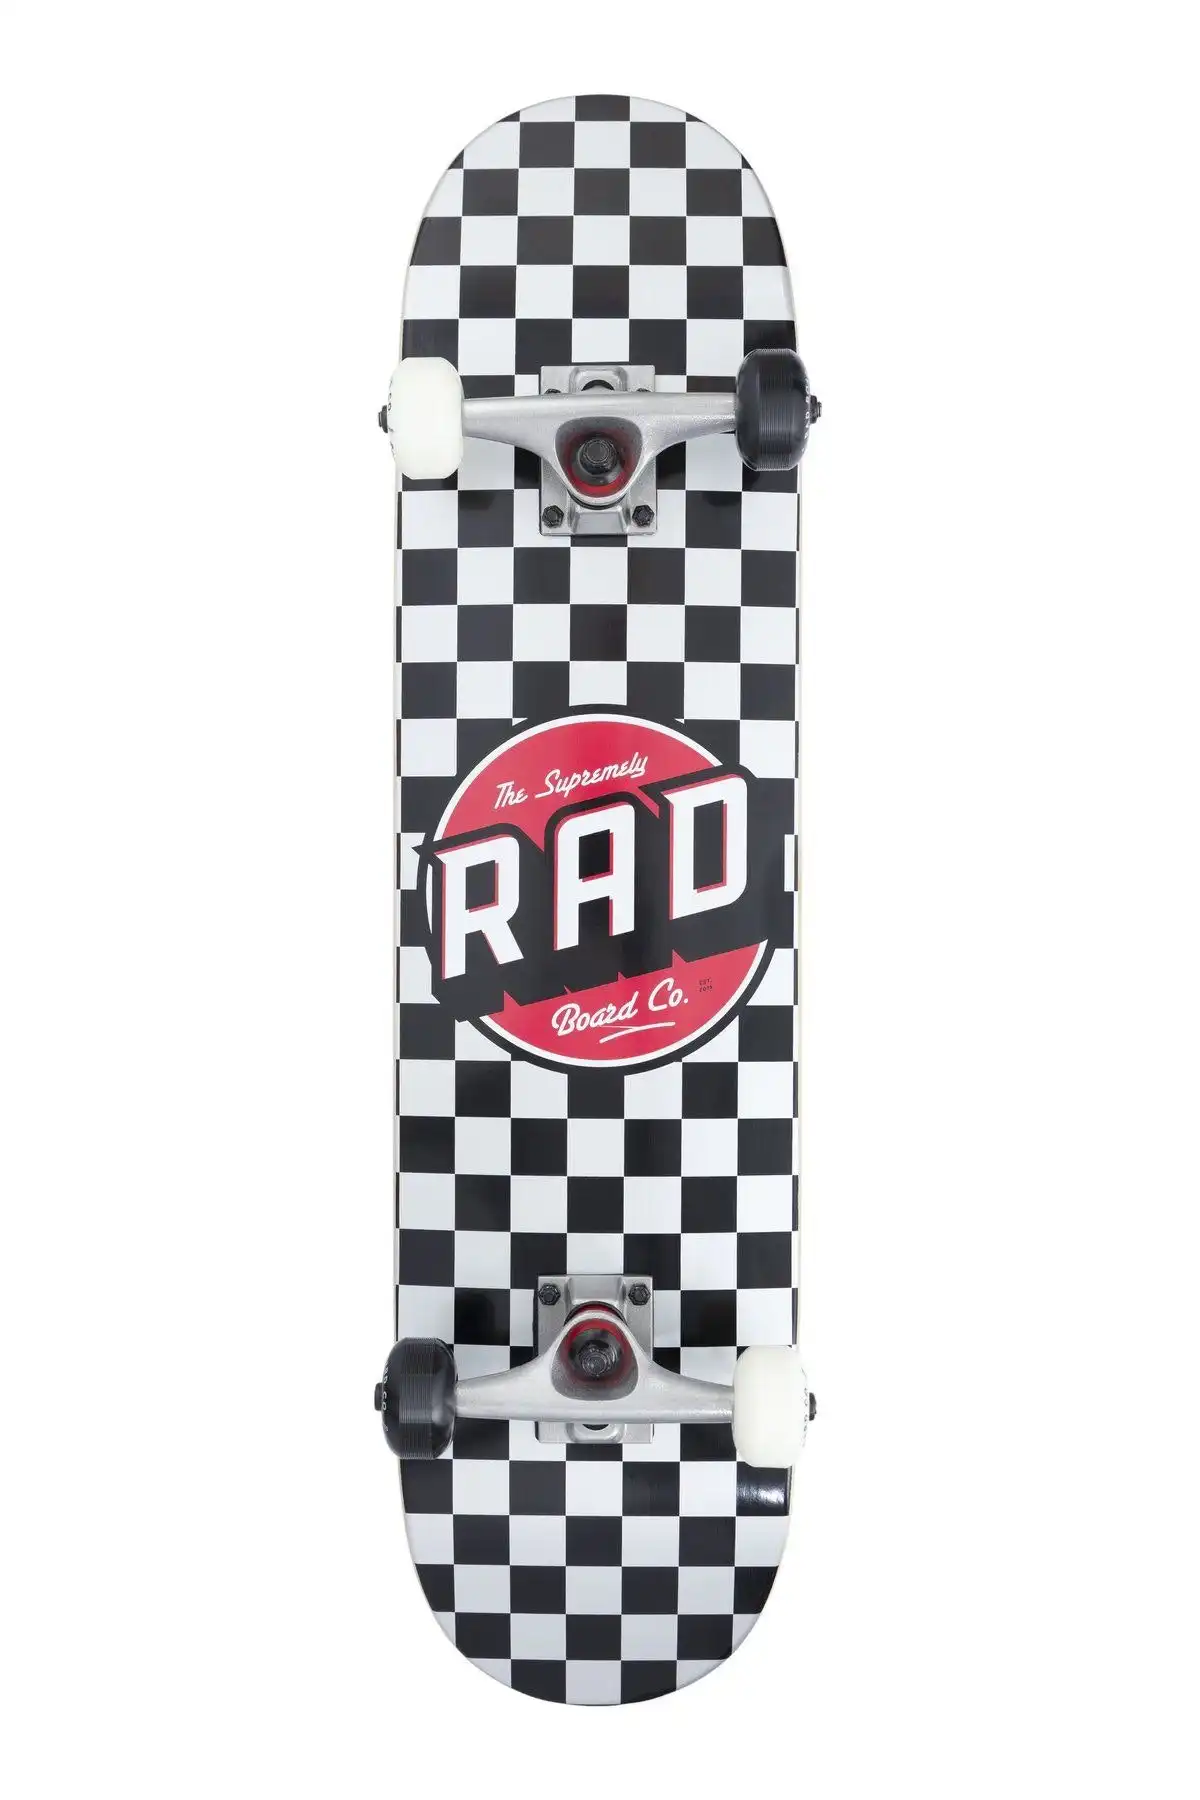 Rad Board Co Skateboard Crew Checkers Black/ White - 8"